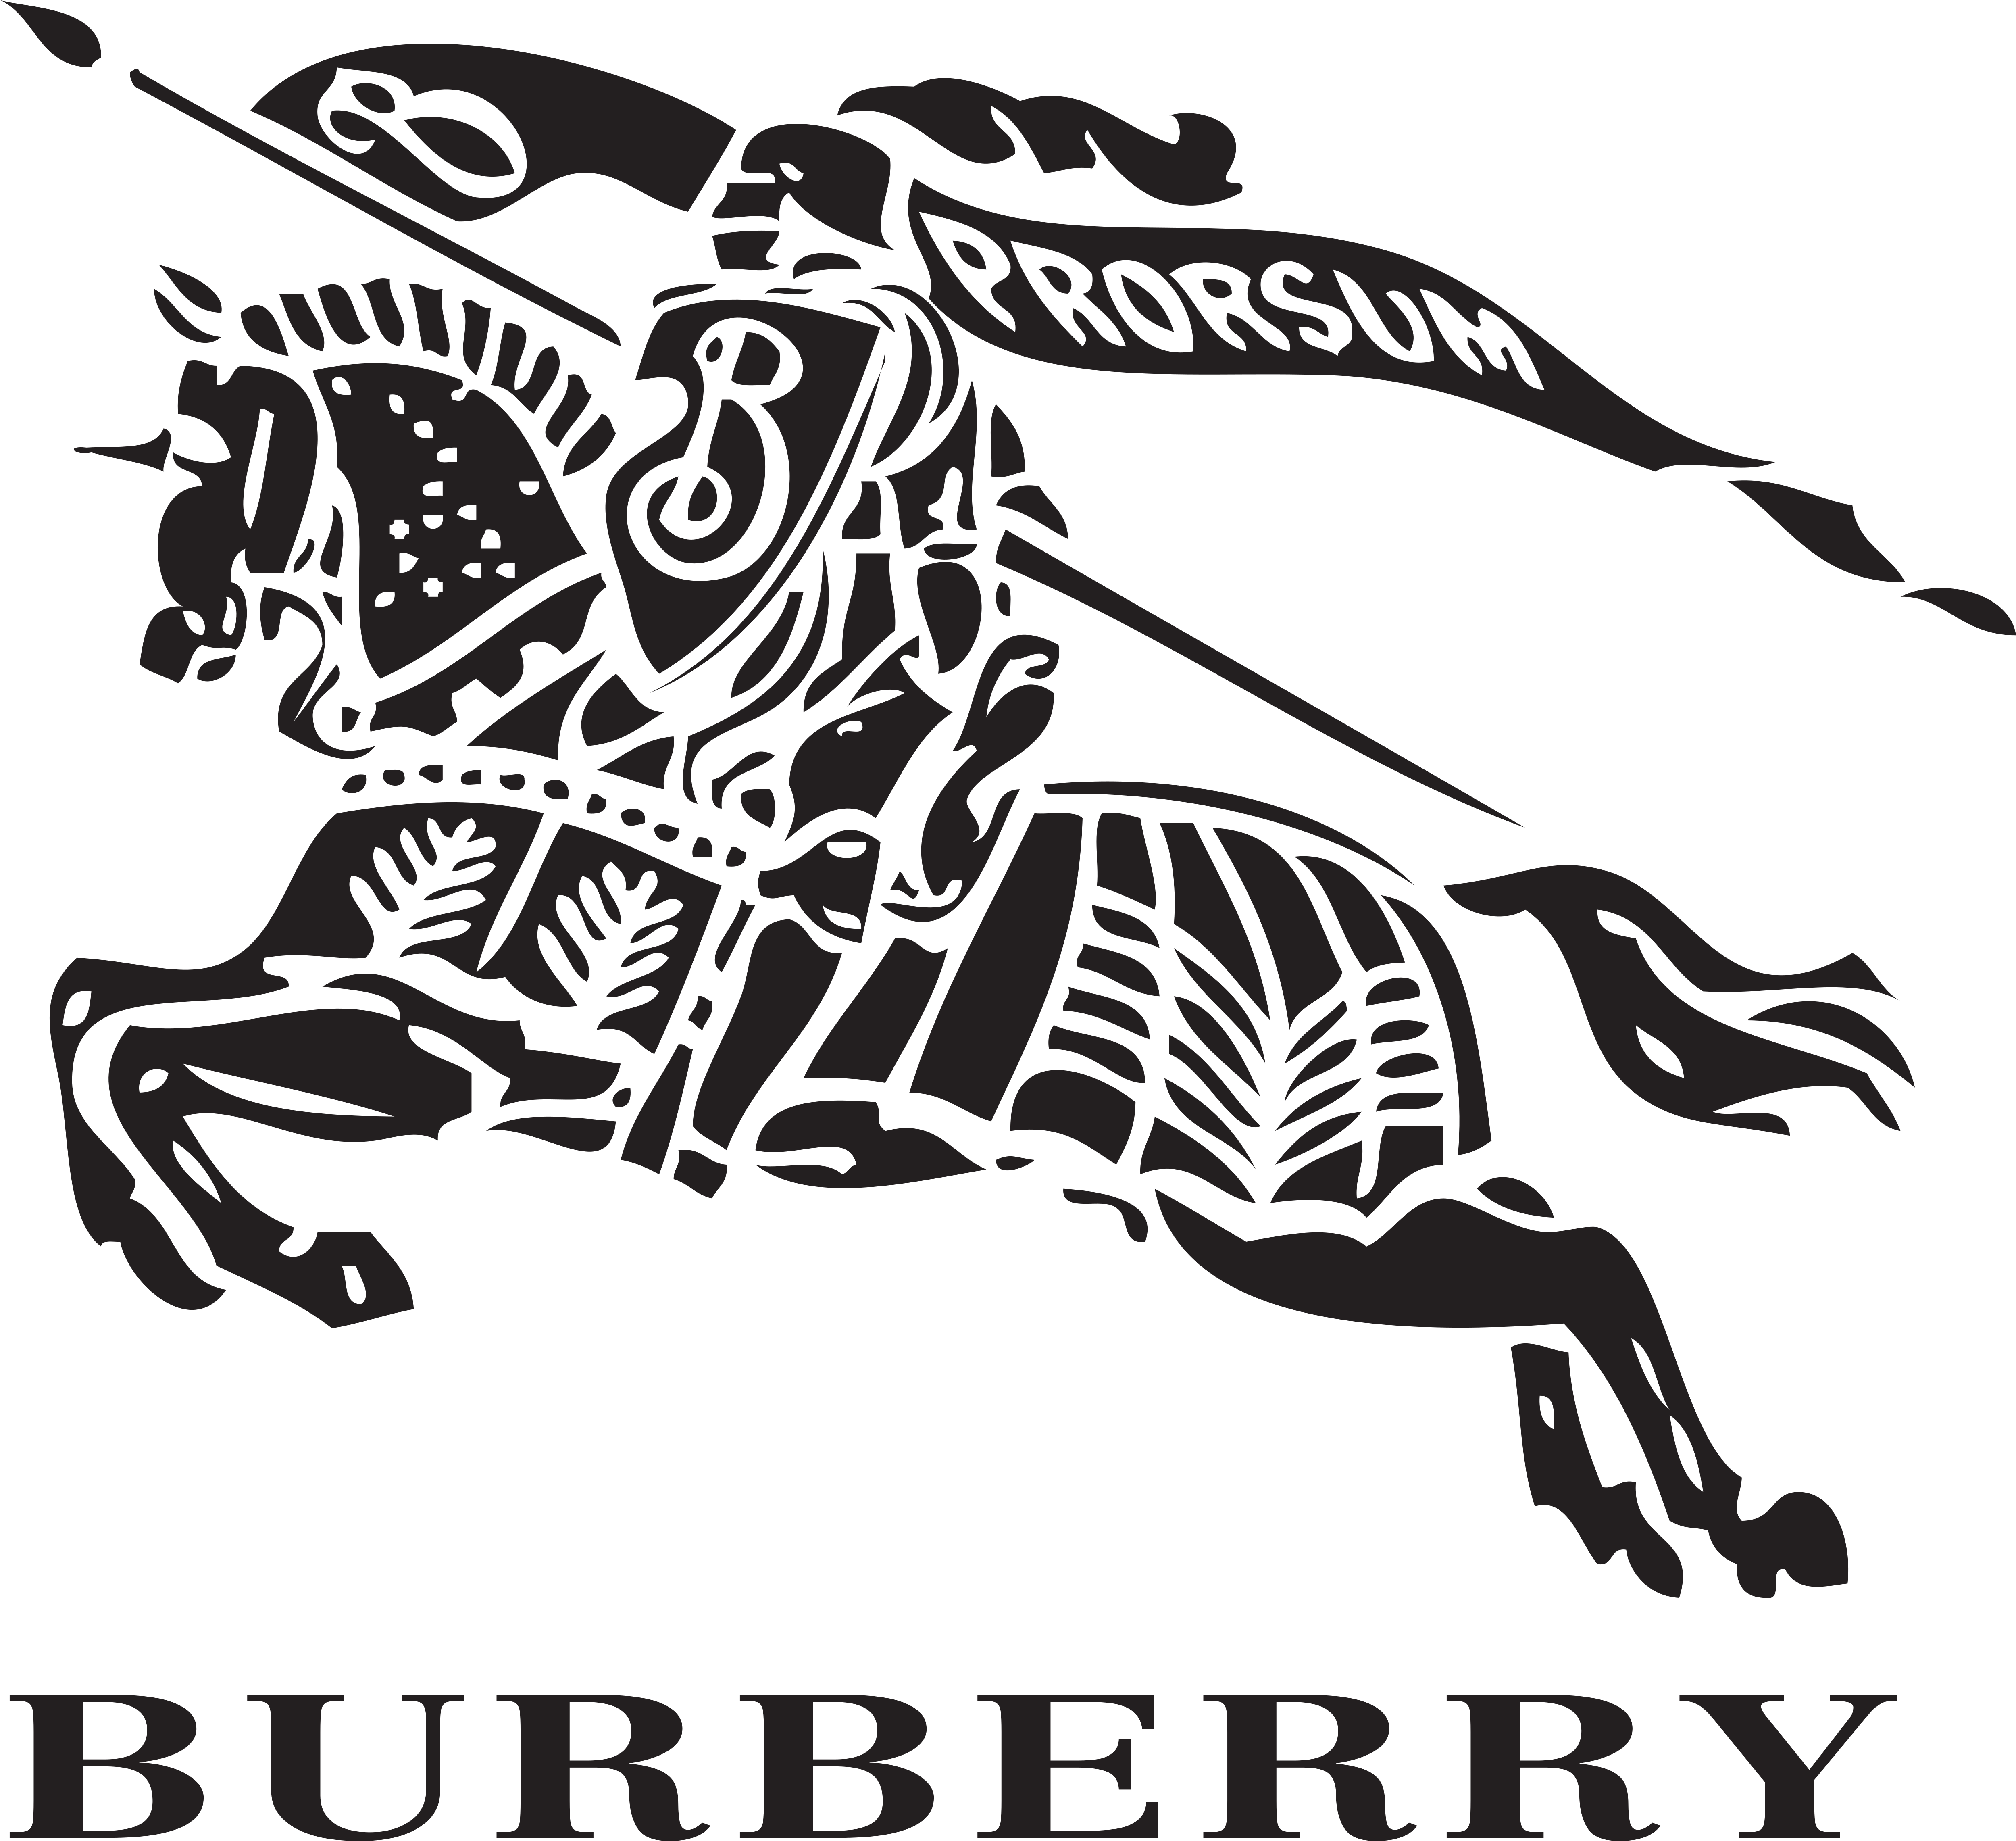 Xem ngay các mẫu burberry logo png với độ phân giải cao và chuẩn xác